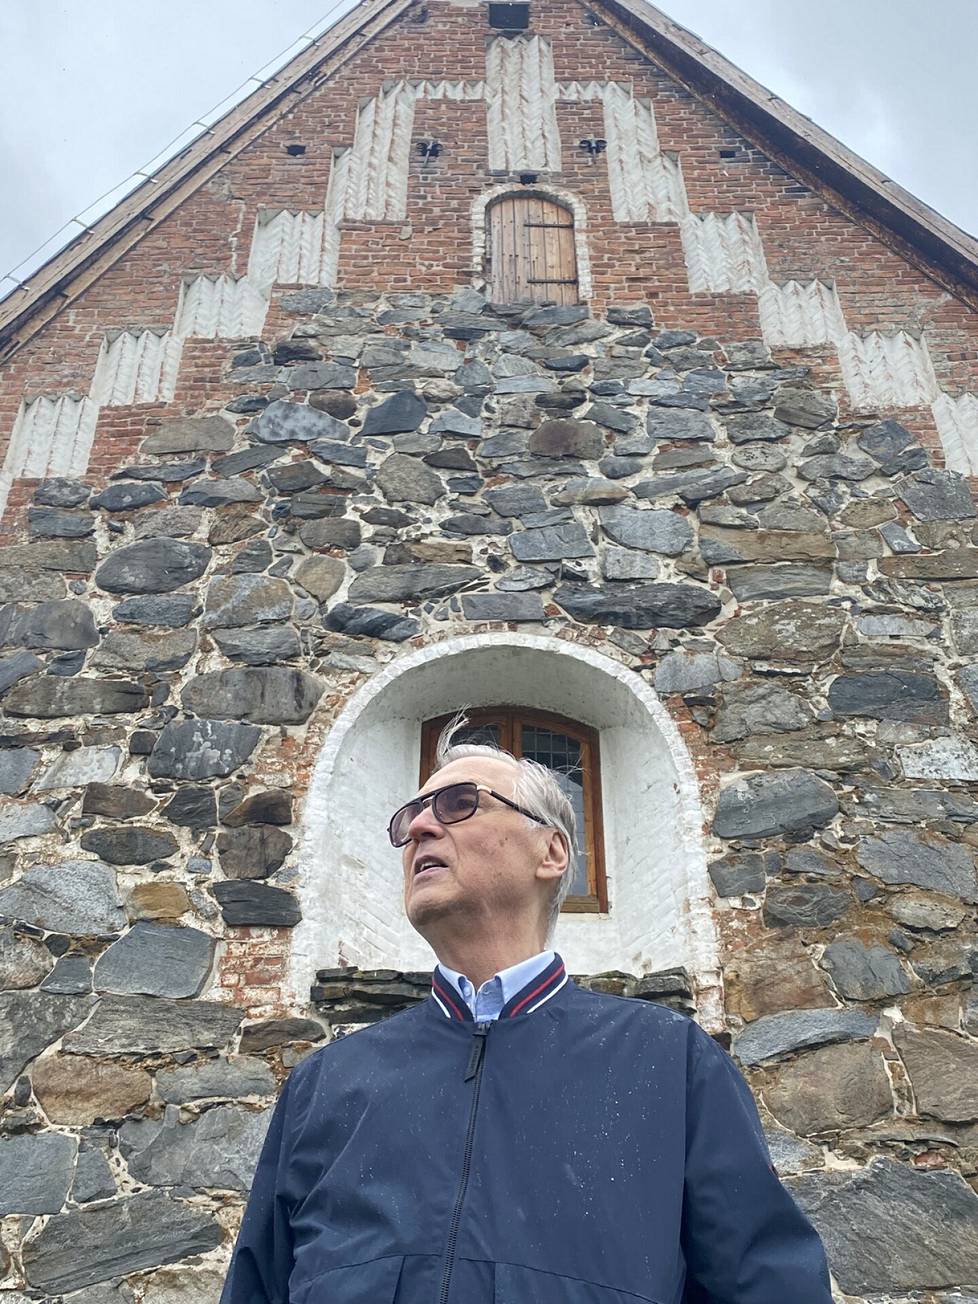 Tyrvään kirkkoherrana vuonna 1997 työskennellyt Osmo Ojansivu palasi jälleenrakennetulle Tyrvään Pyhän Olavin kirkolle 25 vuotta tuhopolton jälkeen.